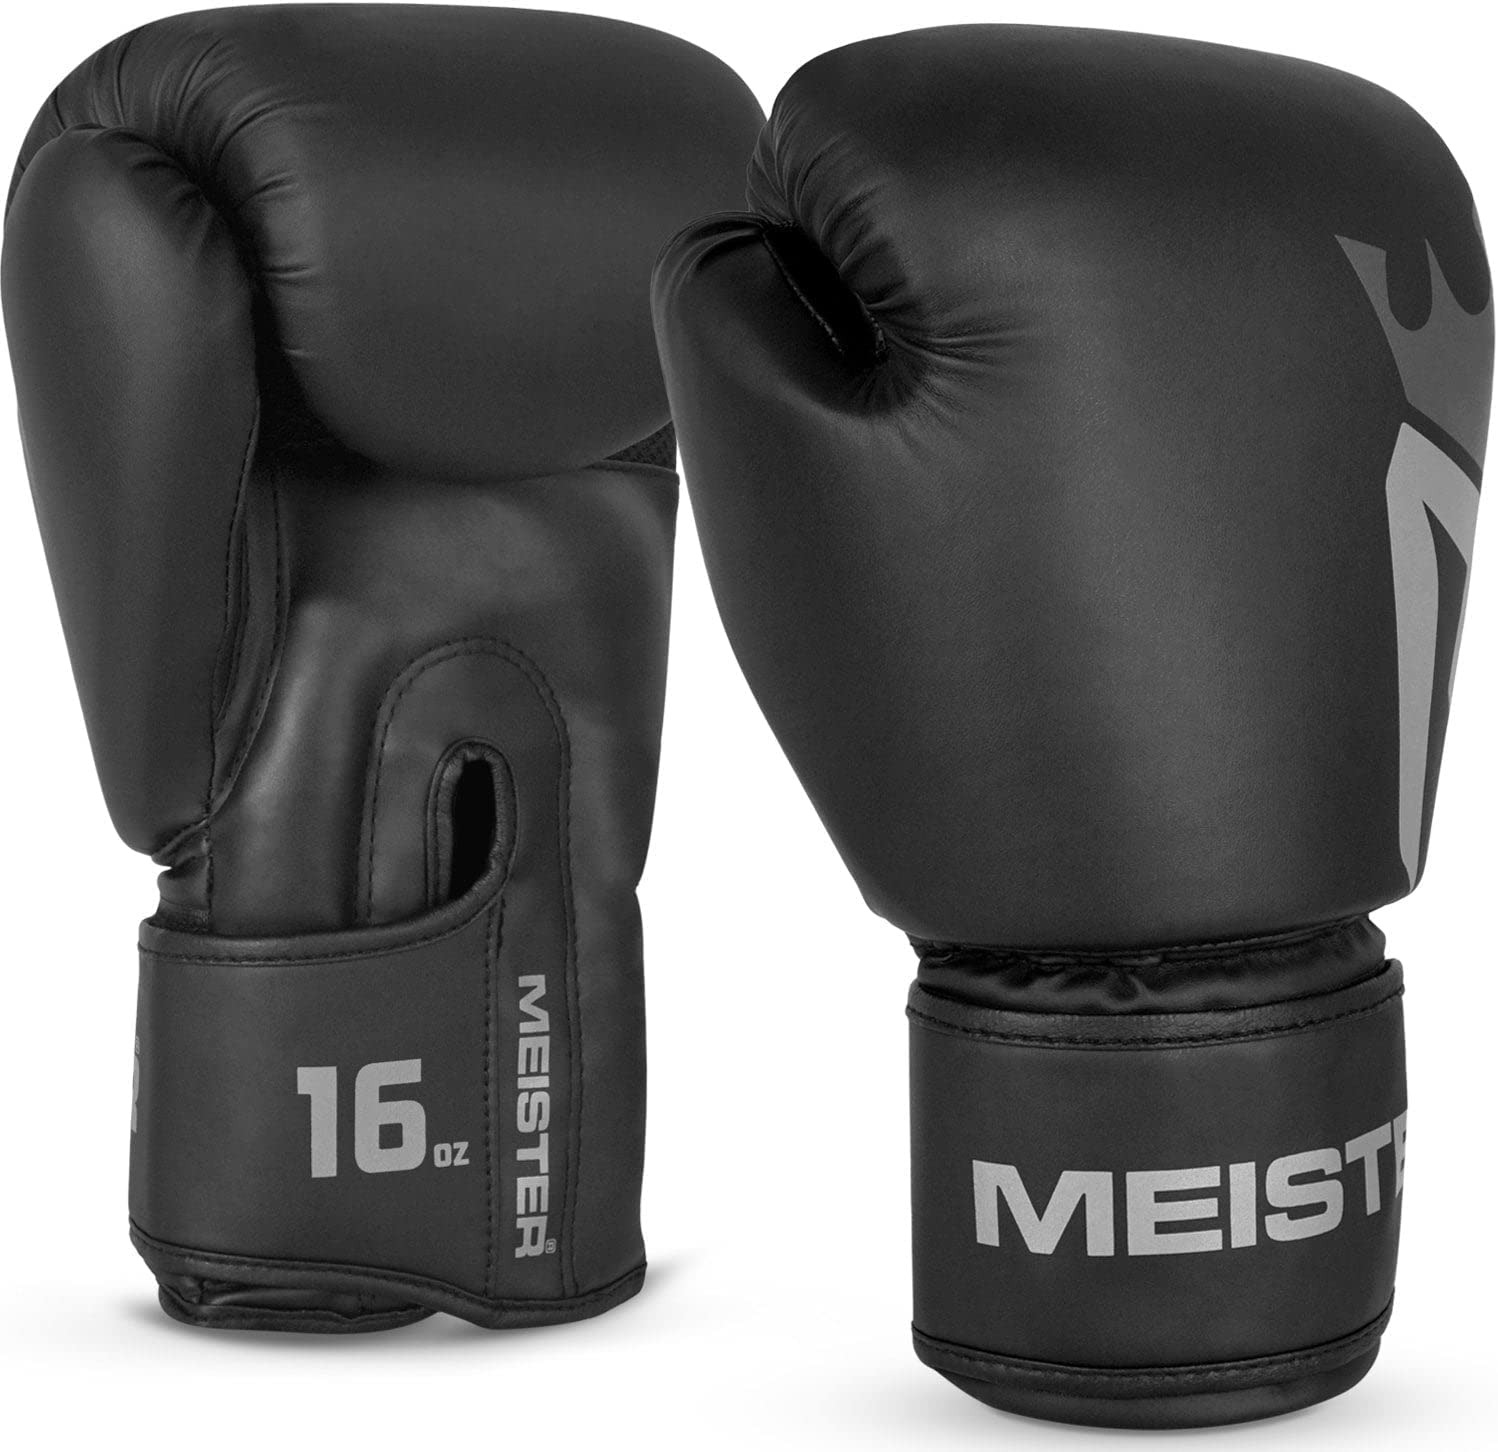 Meister [Critical] Boxing Gloves - Ergonomic High-Density Training Gloves - 8...